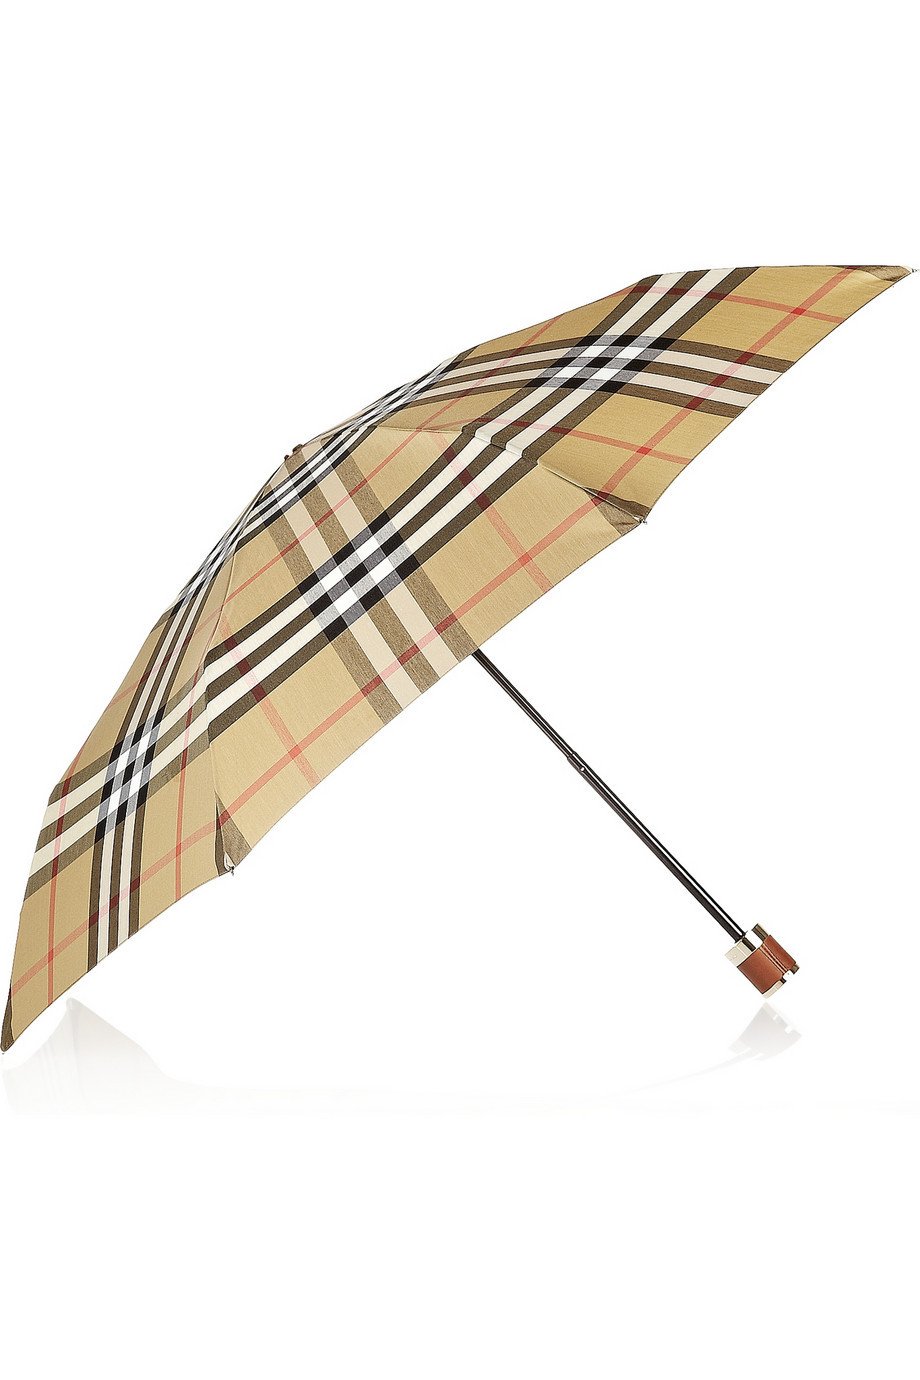 Deštník, Burberry, www.net-a-porter.com, cca. 5020 Kč.